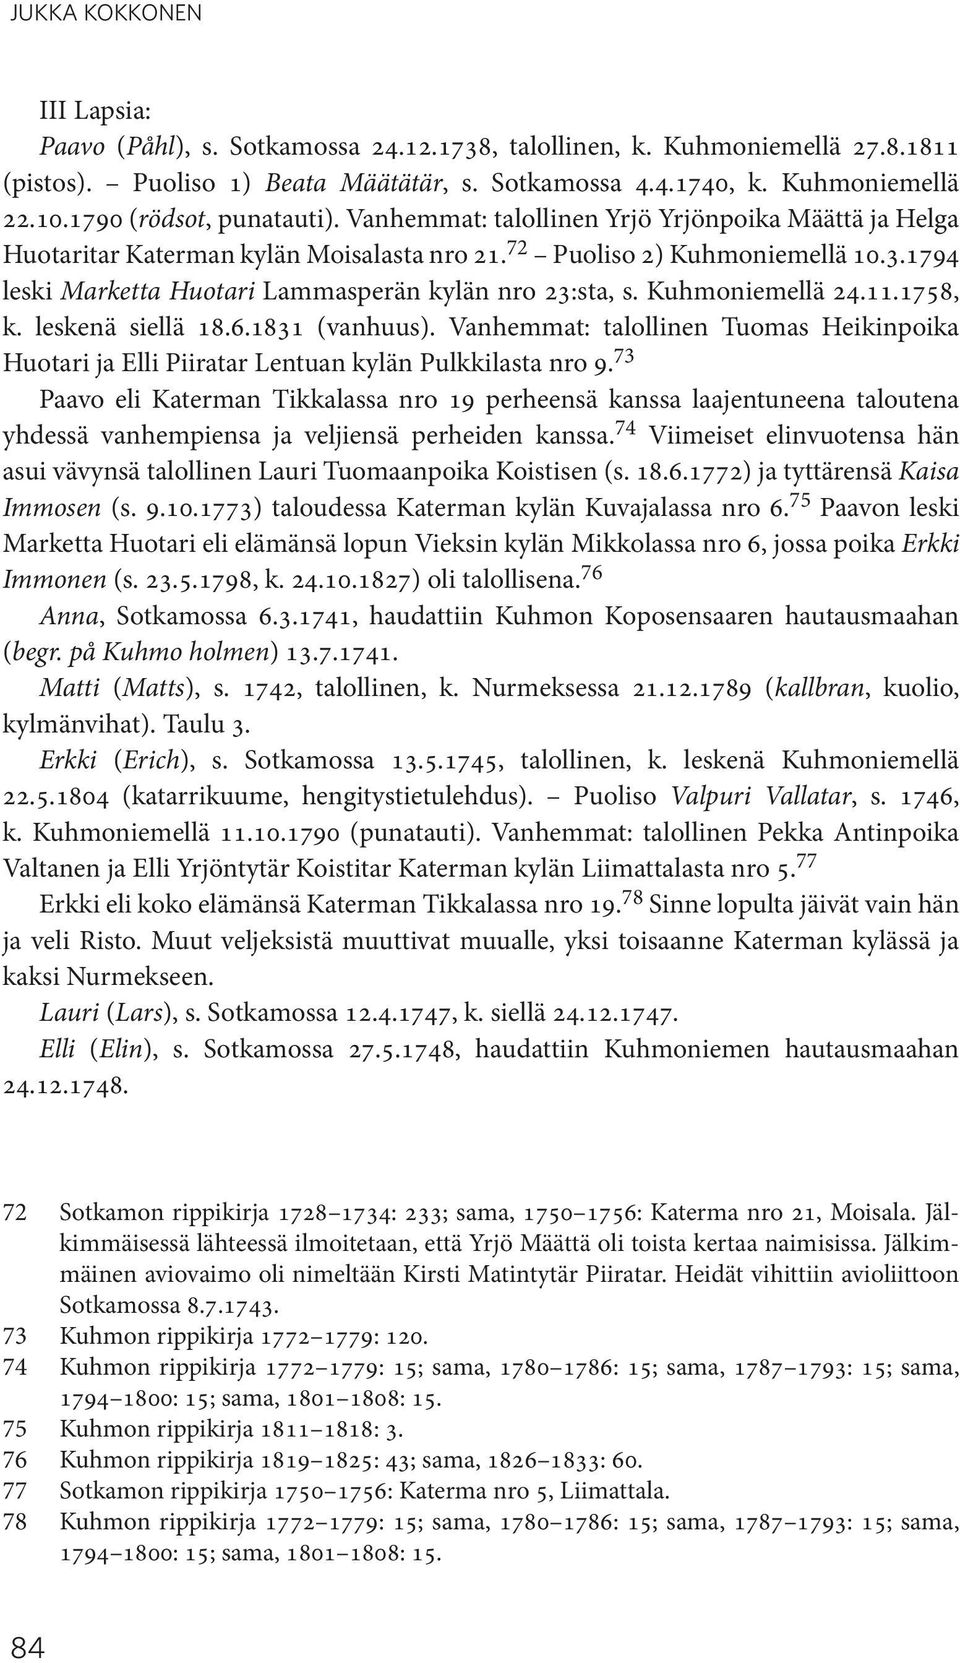 1794 leski Marketta Huotari Lammasperän kylän nro 23:sta, s. Kuhmoniemellä 24.11.1758, k. leskenä siellä 18.6.1831 (vanhuus).